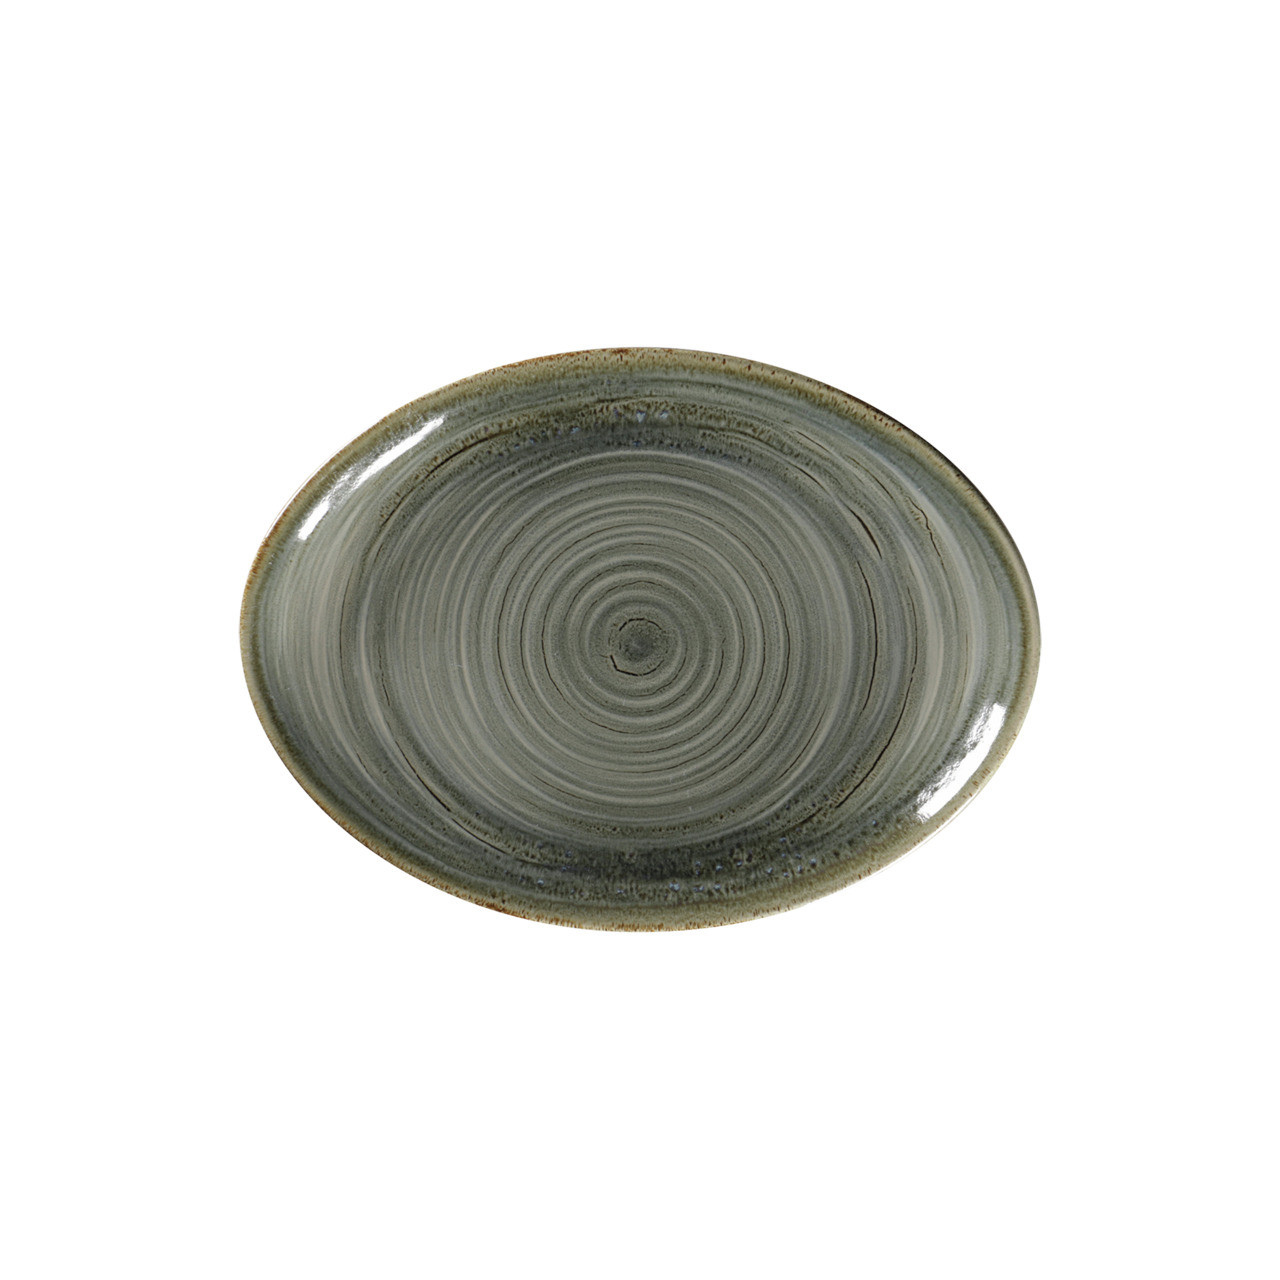 Spot, Platte oval 260 x 190 mm peridot green